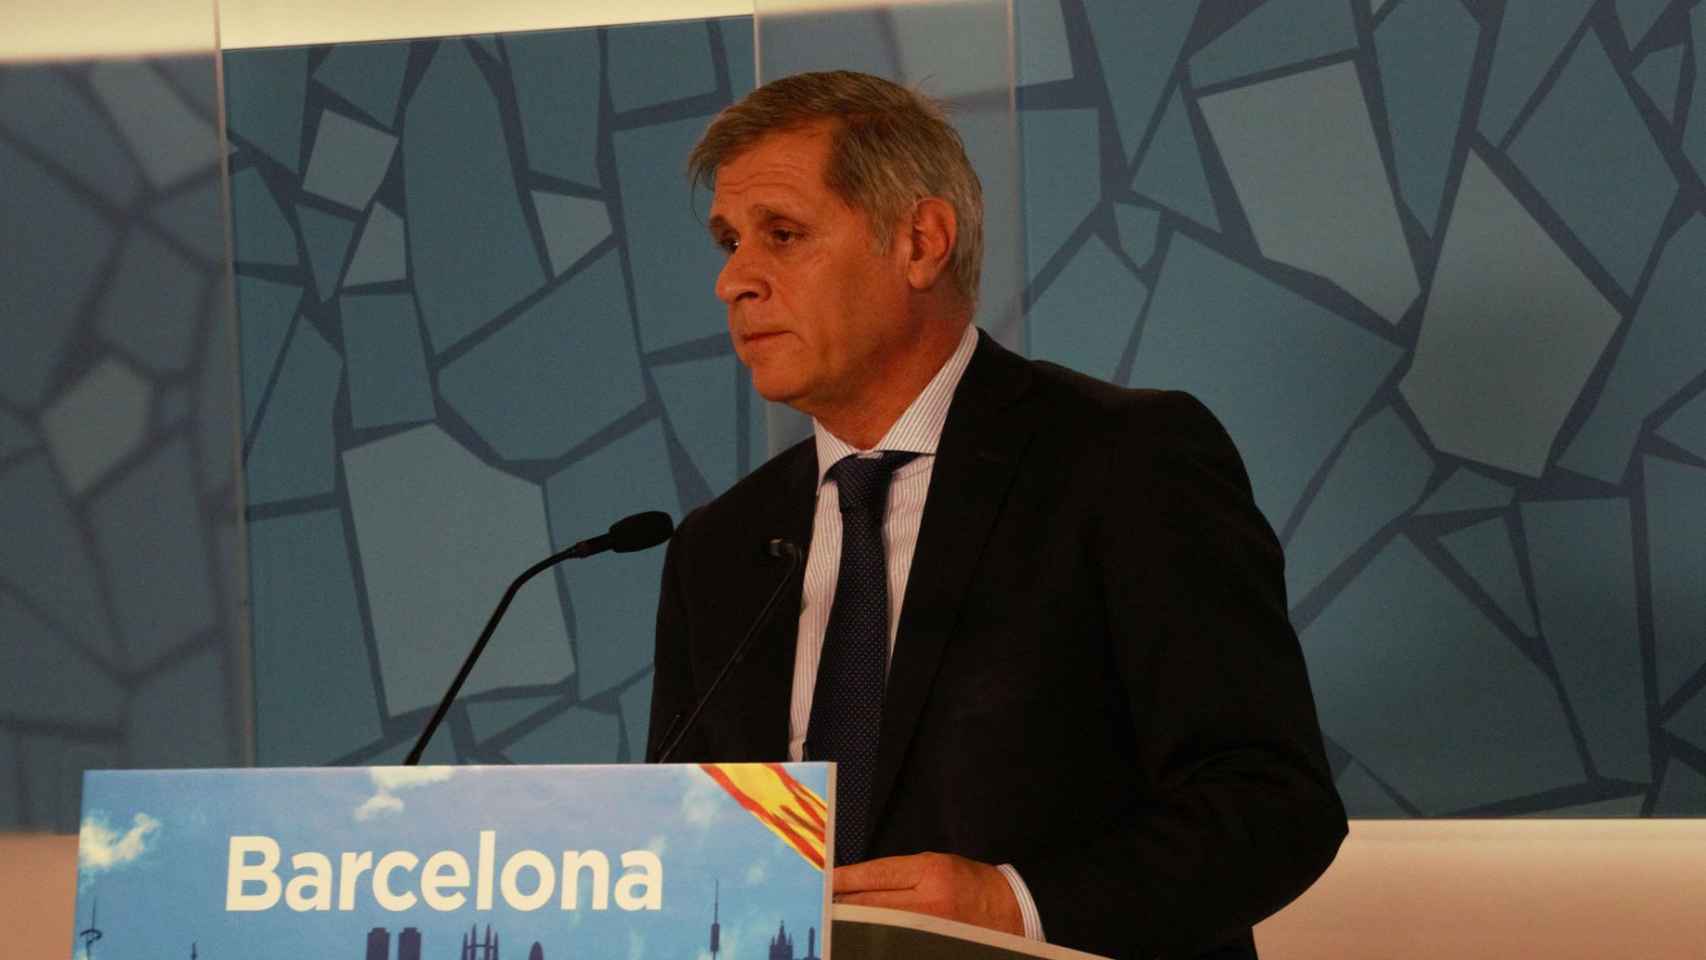 Alberto Fernández, líder del PP en el Ayuntamiento de Barcelona, durante una conferencia en la sede popular de Barcelona, el pasado enero / PARTIDO POPULAR